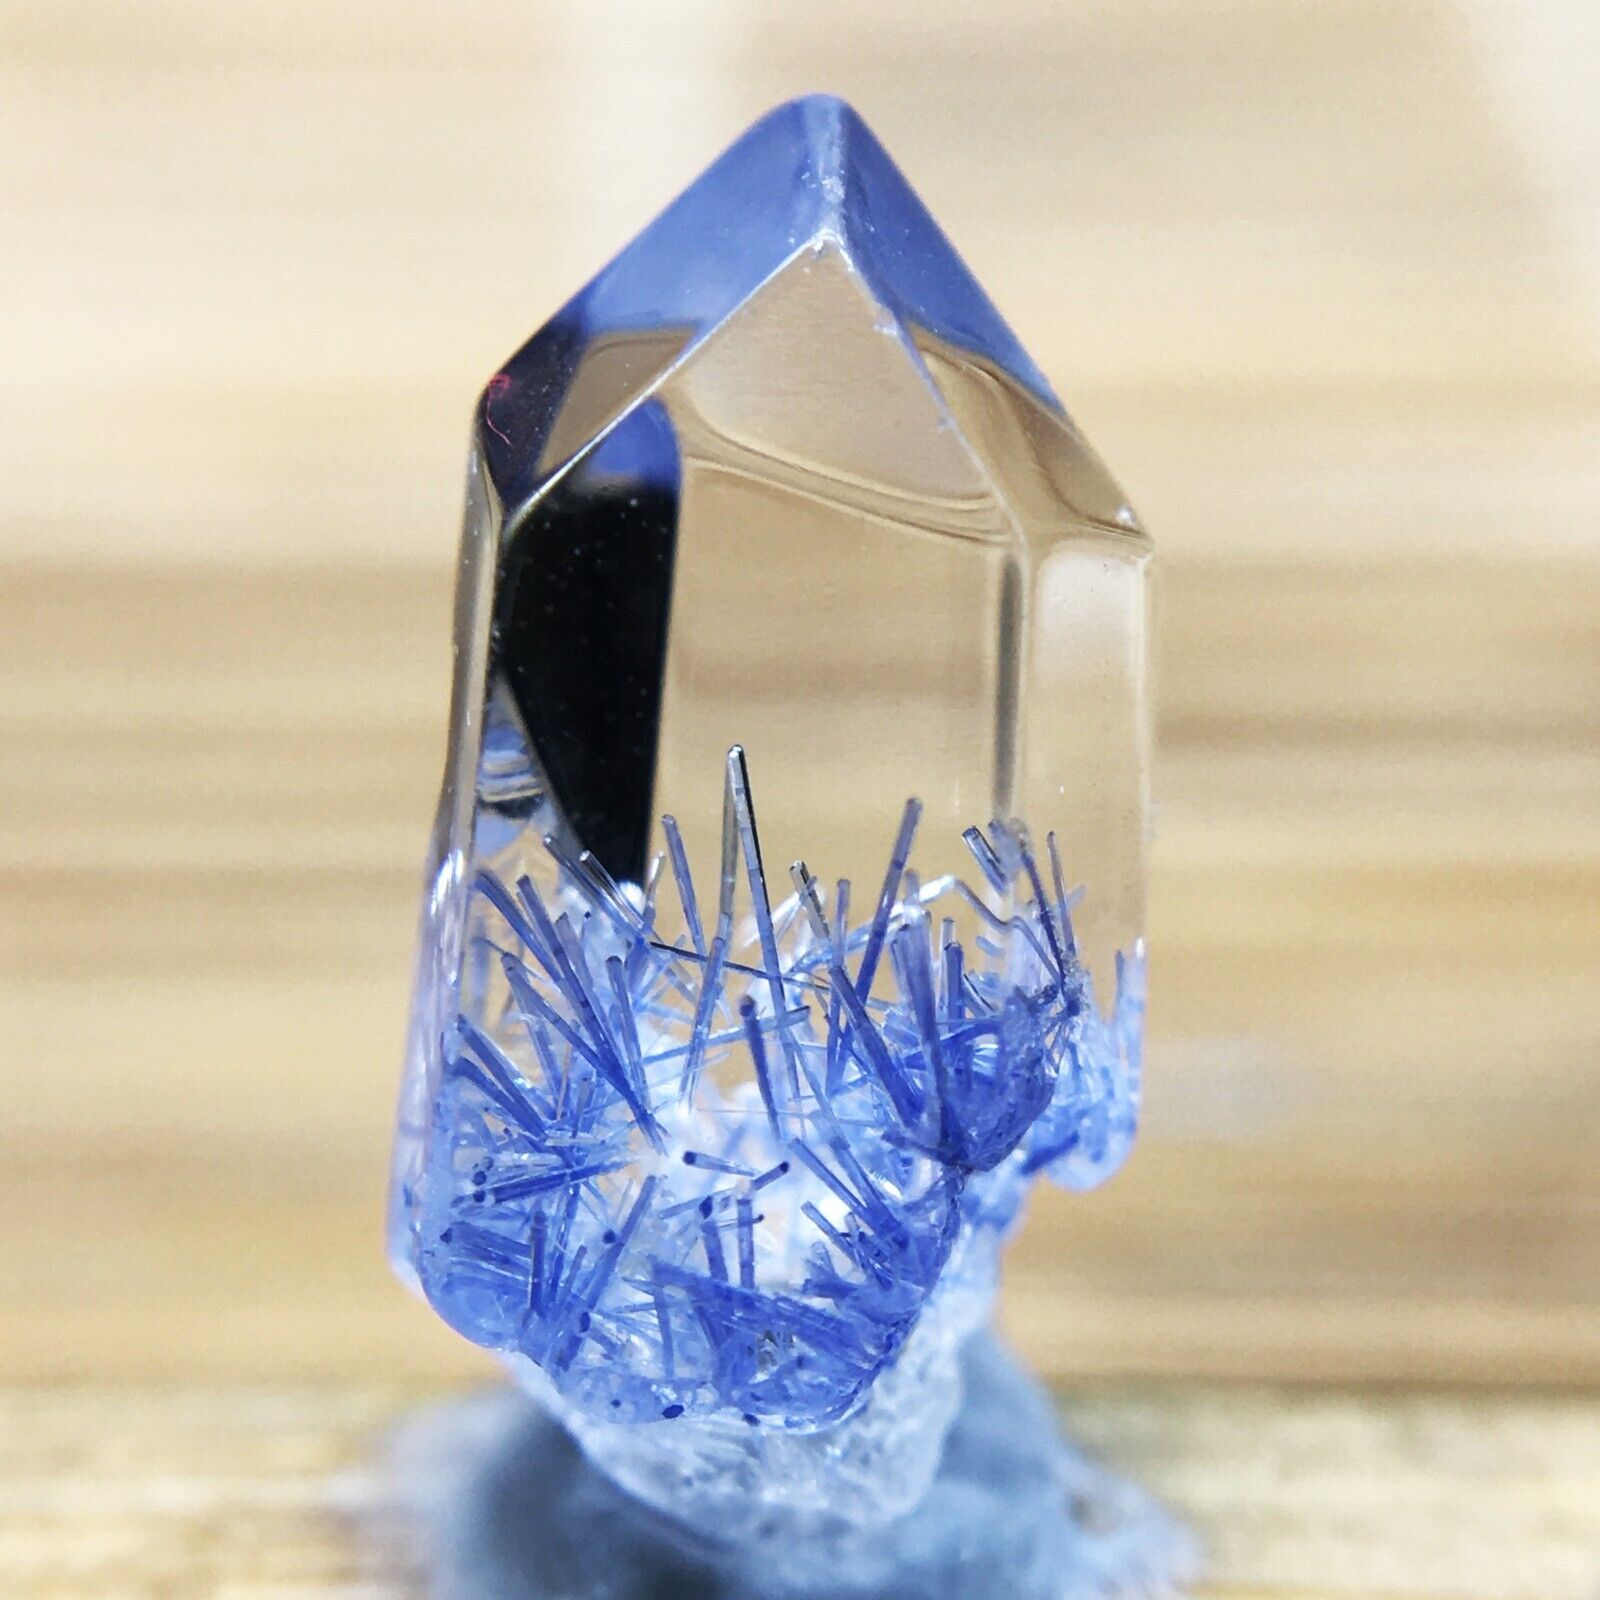 2.1Ct Very Rare NATURAL Beautiful Blue Dumortierite Quartz Crystal Specimen